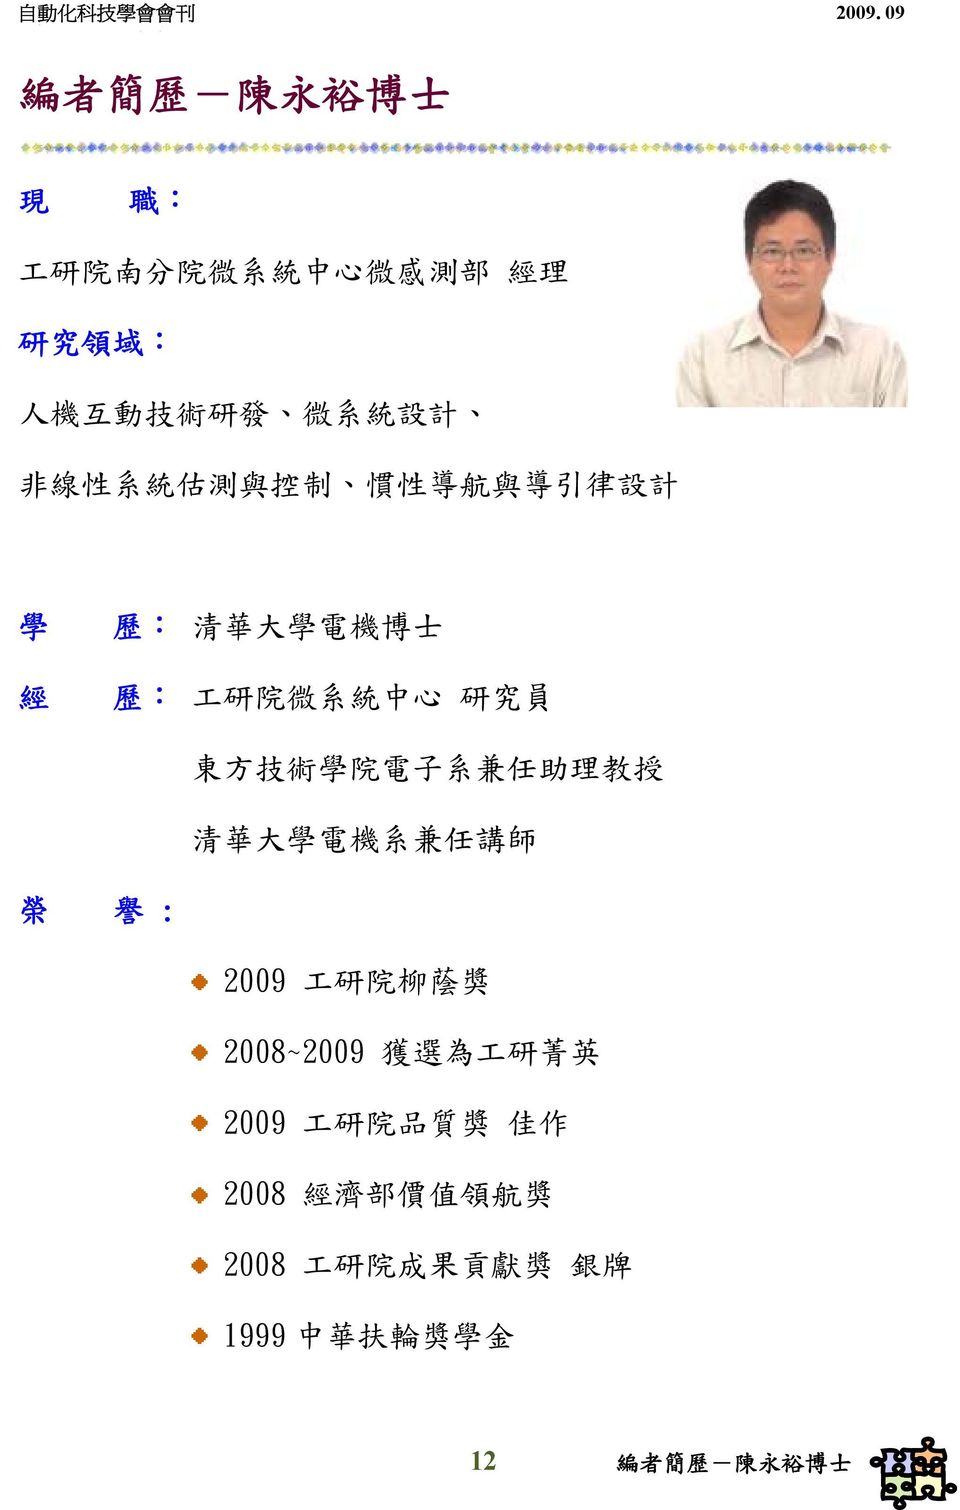 院 電 子 系 兼 任 助 理 教 授 清 華 大 學 電 機 系 兼 任 講 師 榮 譽 : 2009 工 研 院 柳 蔭 獎 2008~2009 獲 選 為 工 研 菁 英 2009 工 研